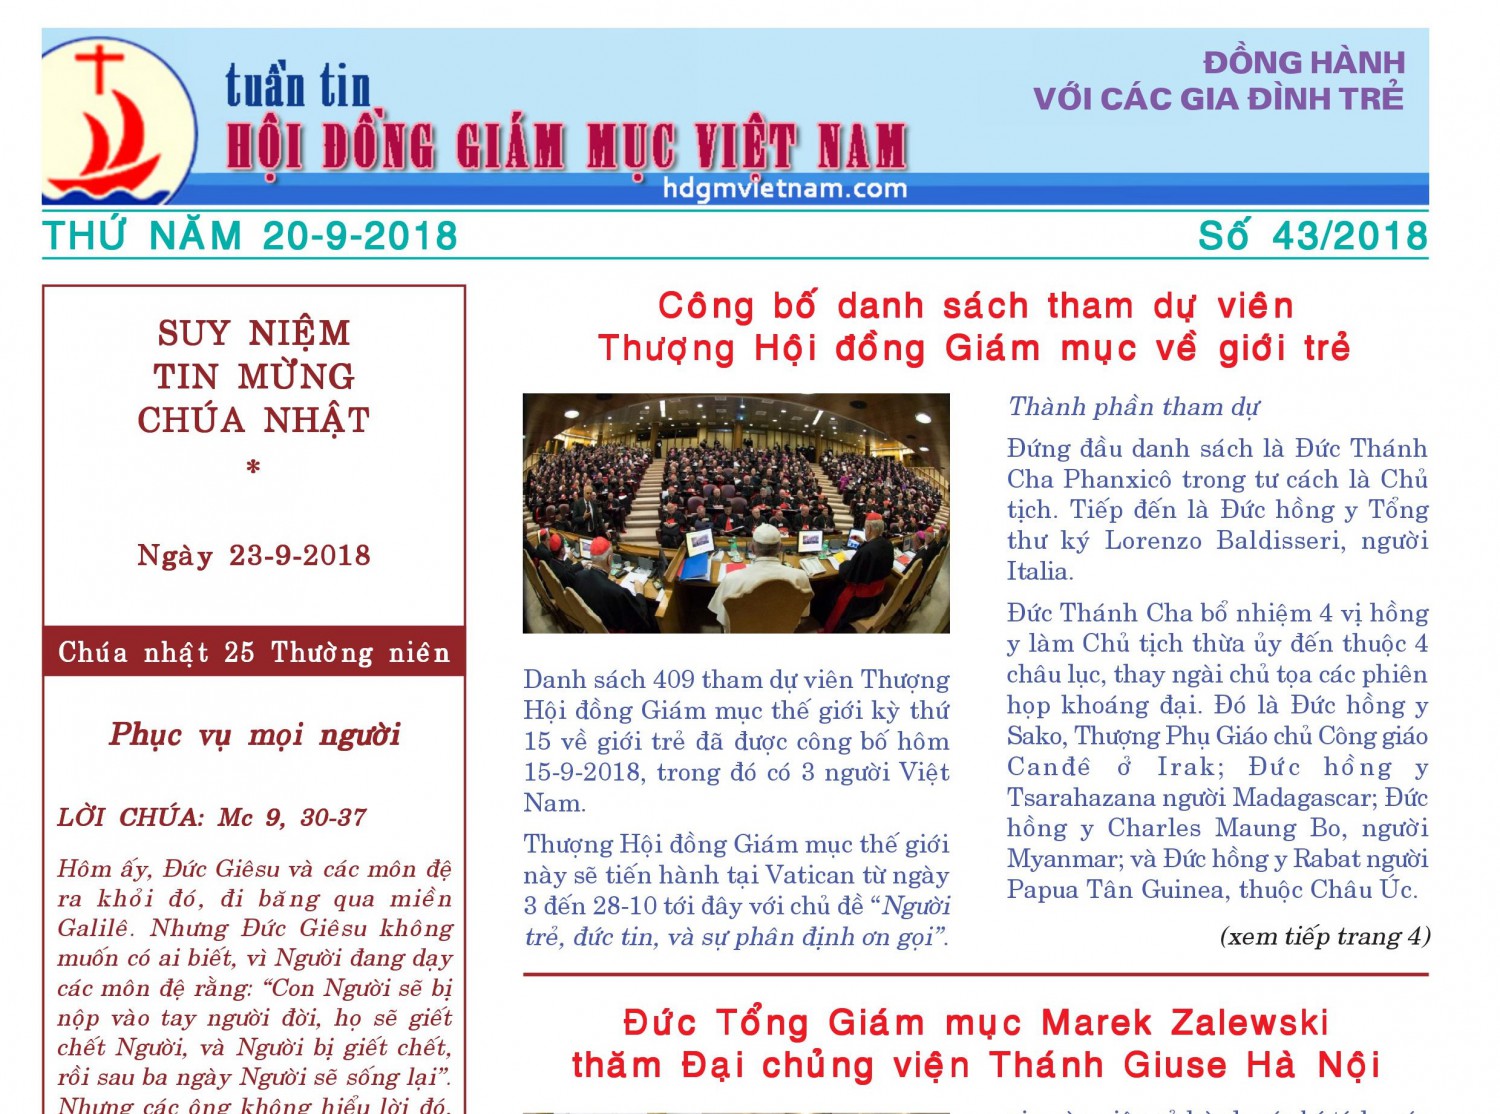 Tuần tin Hội đồng Giám mục Việt Nam số 43/2018